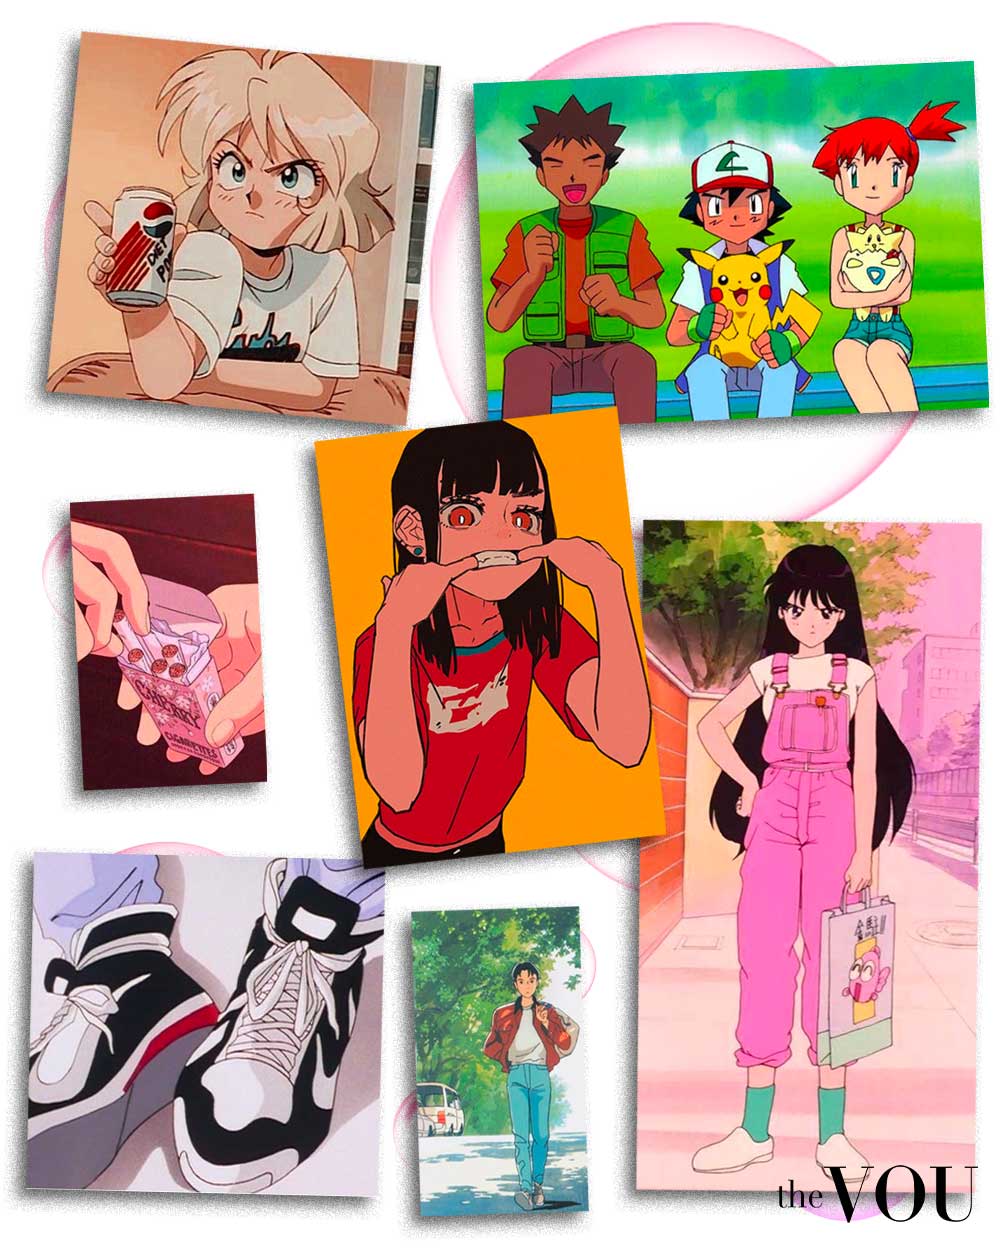 90s anime art style on Pinterest